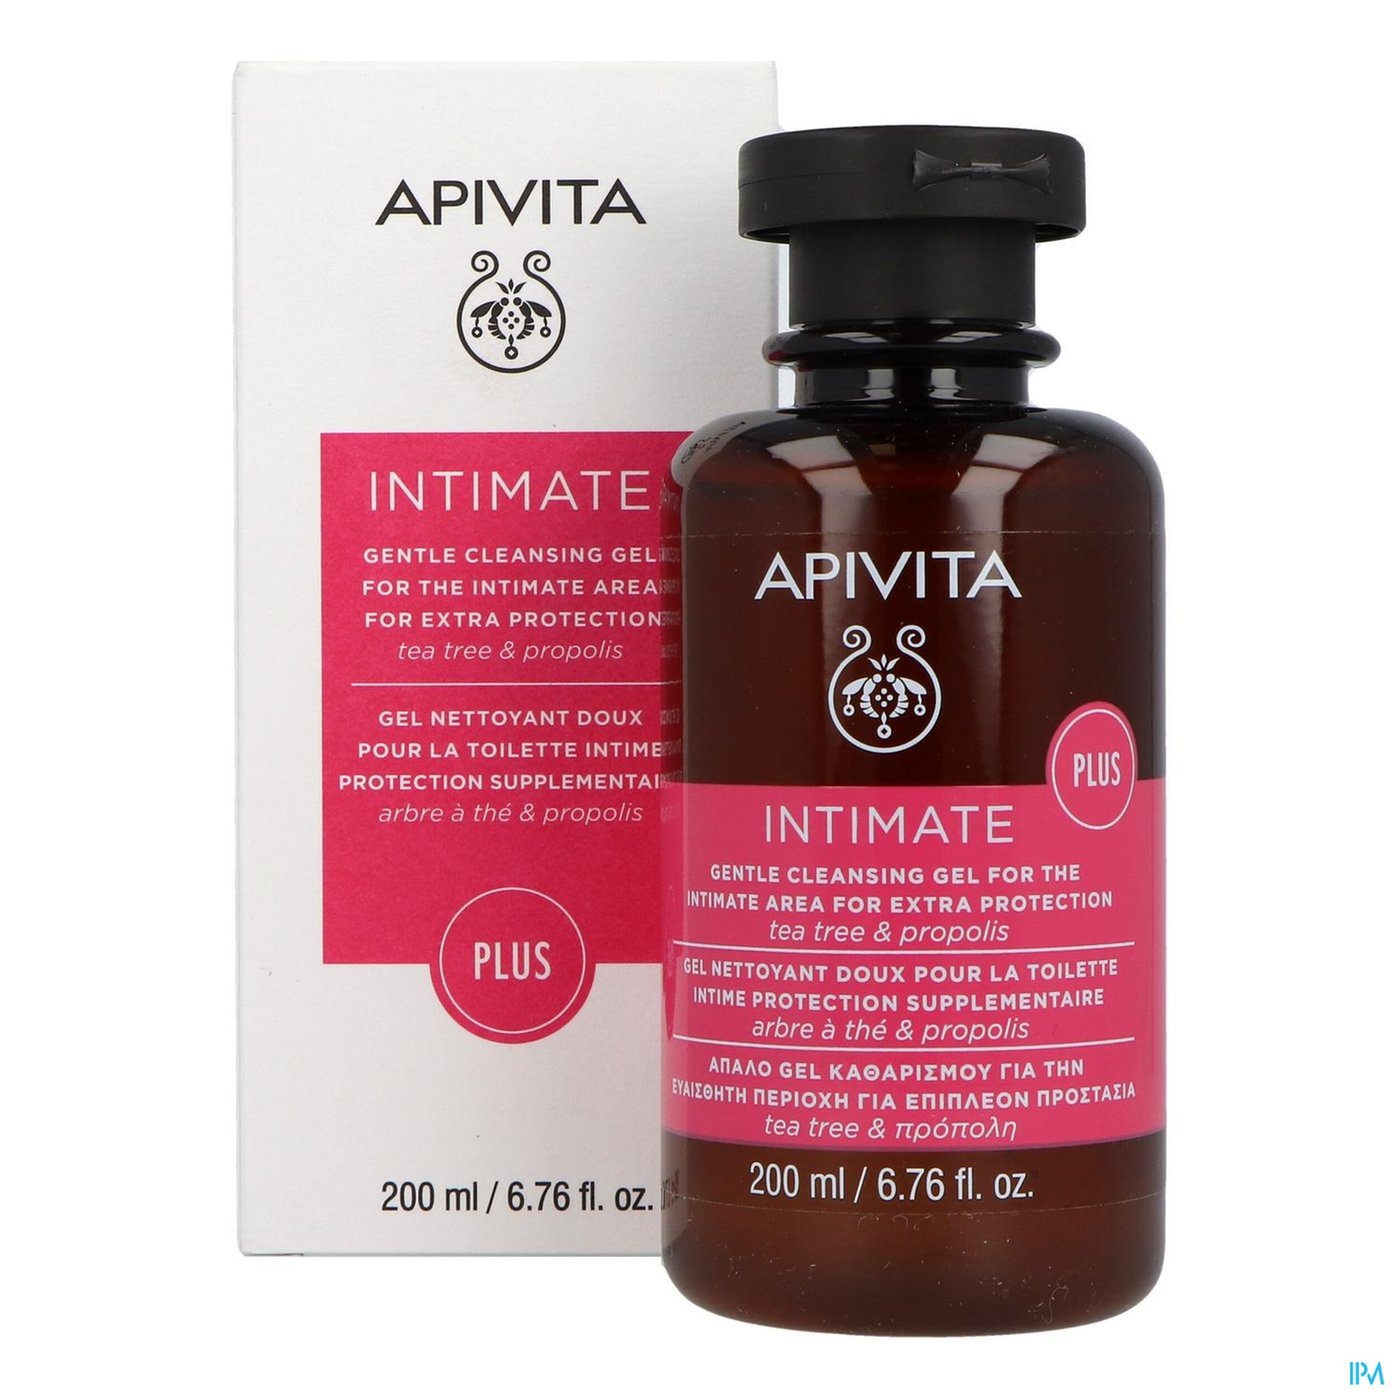 Apivita Intimate Verzorg.zachte Gel Ult.besch200ml productshot